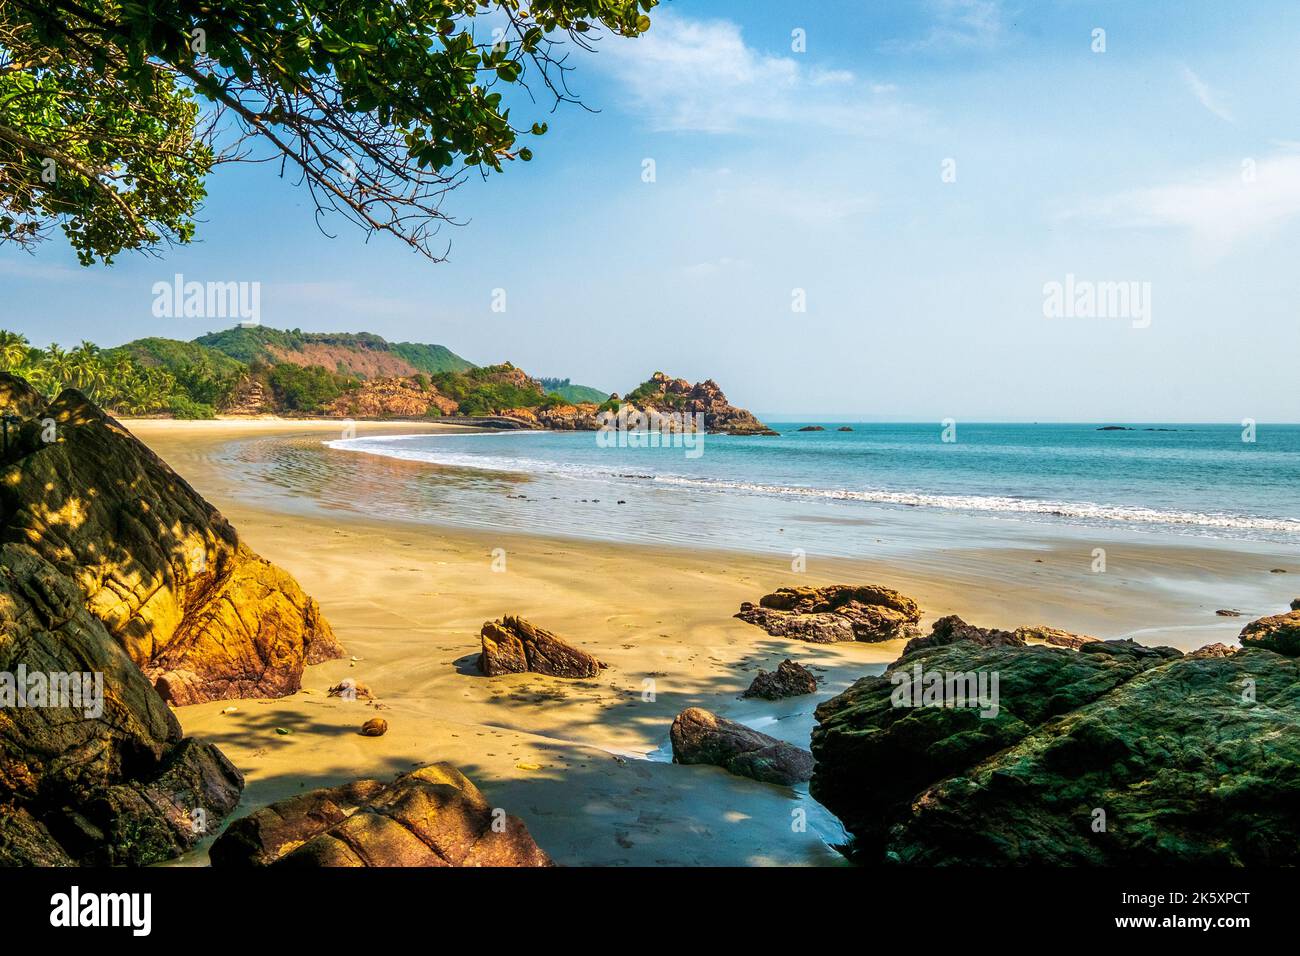 Empty beaches and Beautiful coastal scenery on the Konkan coast of India Stock Photo